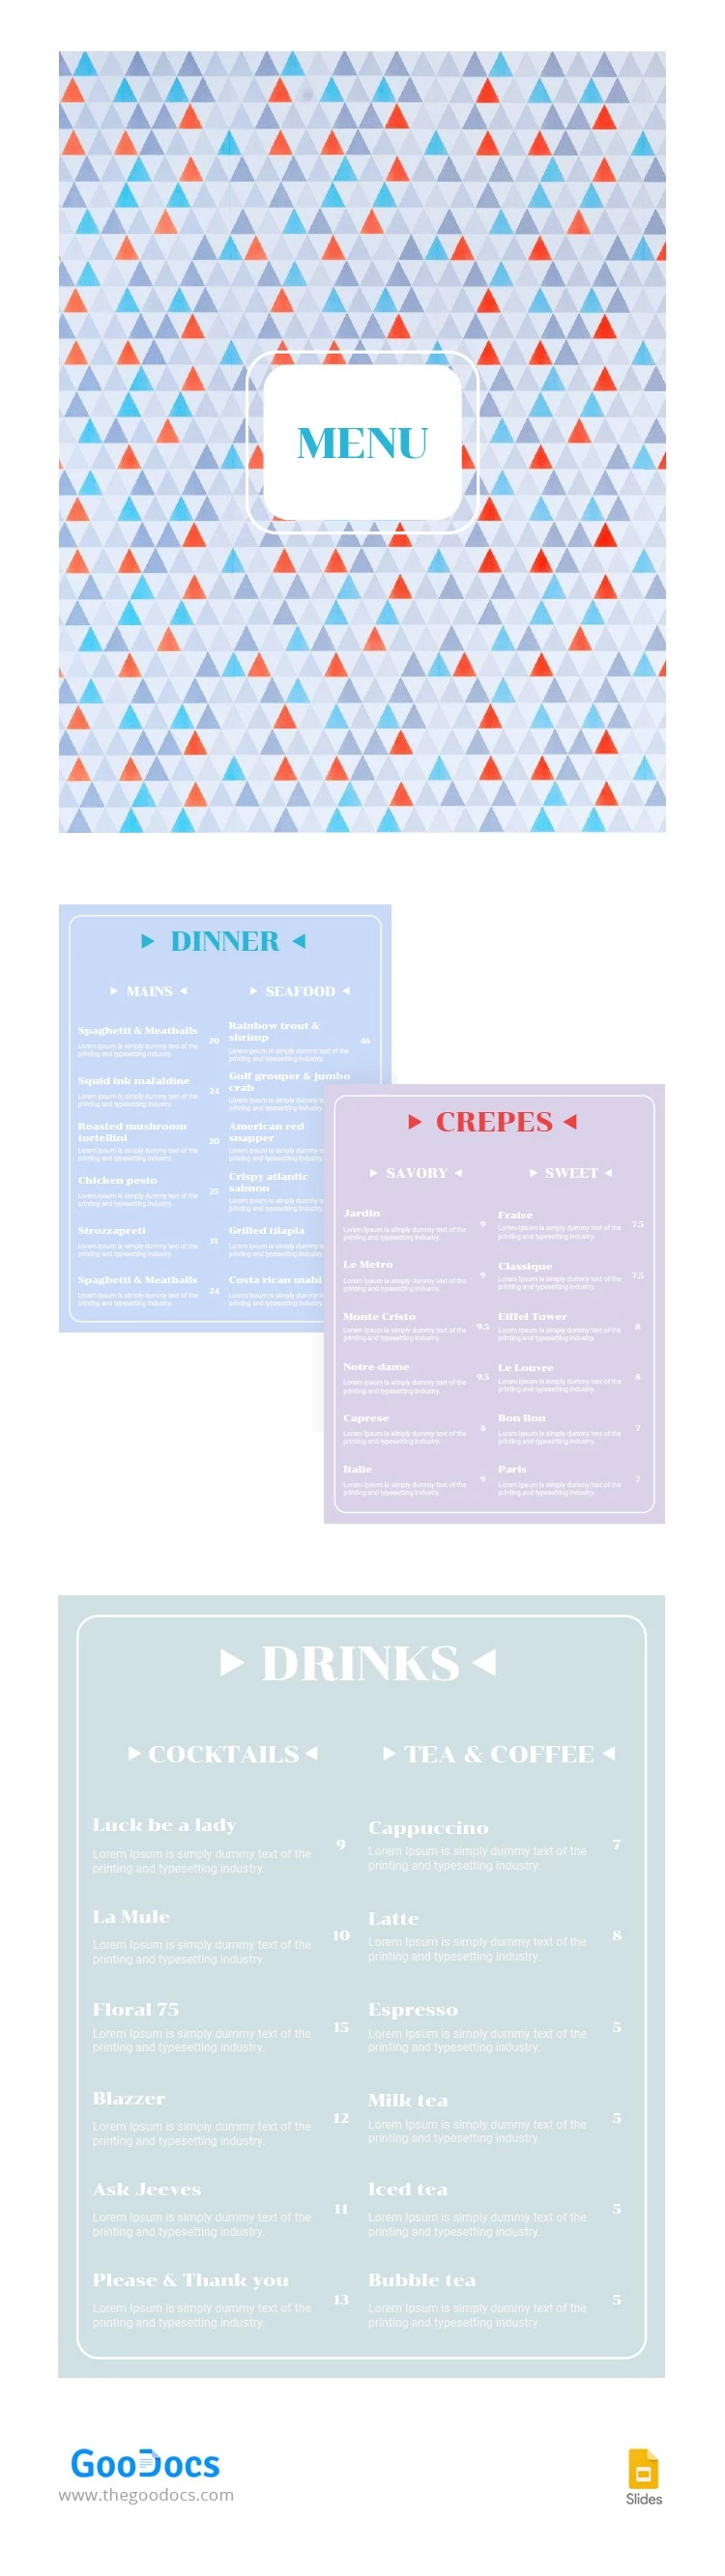 Menú de restaurante moderno - free Google Docs Template - 10062907